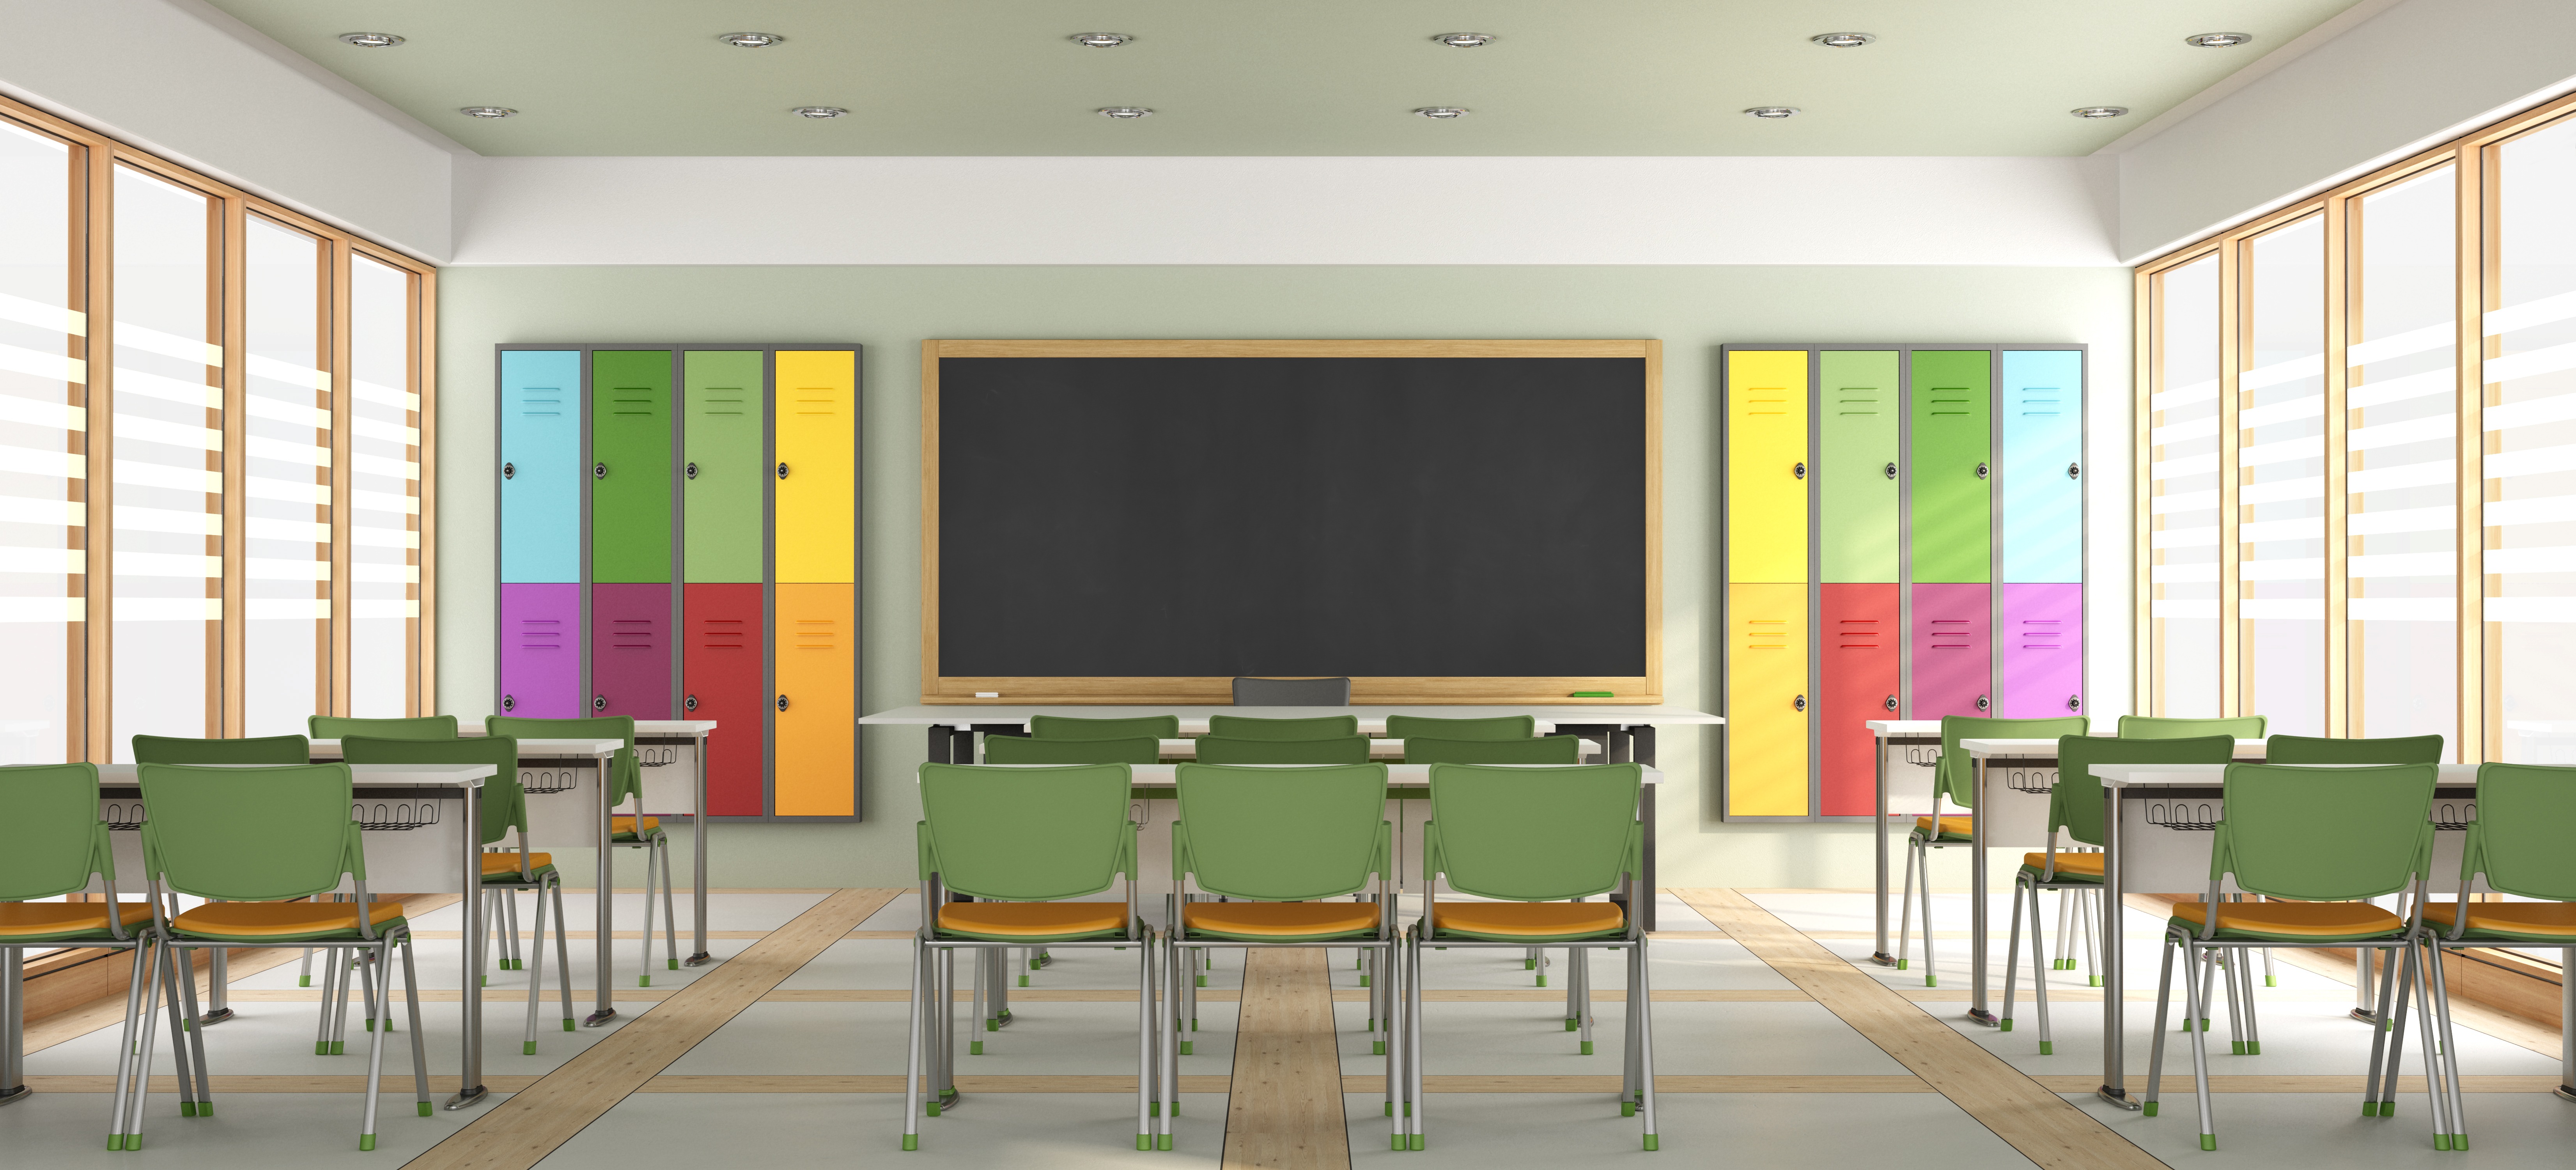 ¿El movimiento en el aula funciona? – Mobiliario escolar Edime